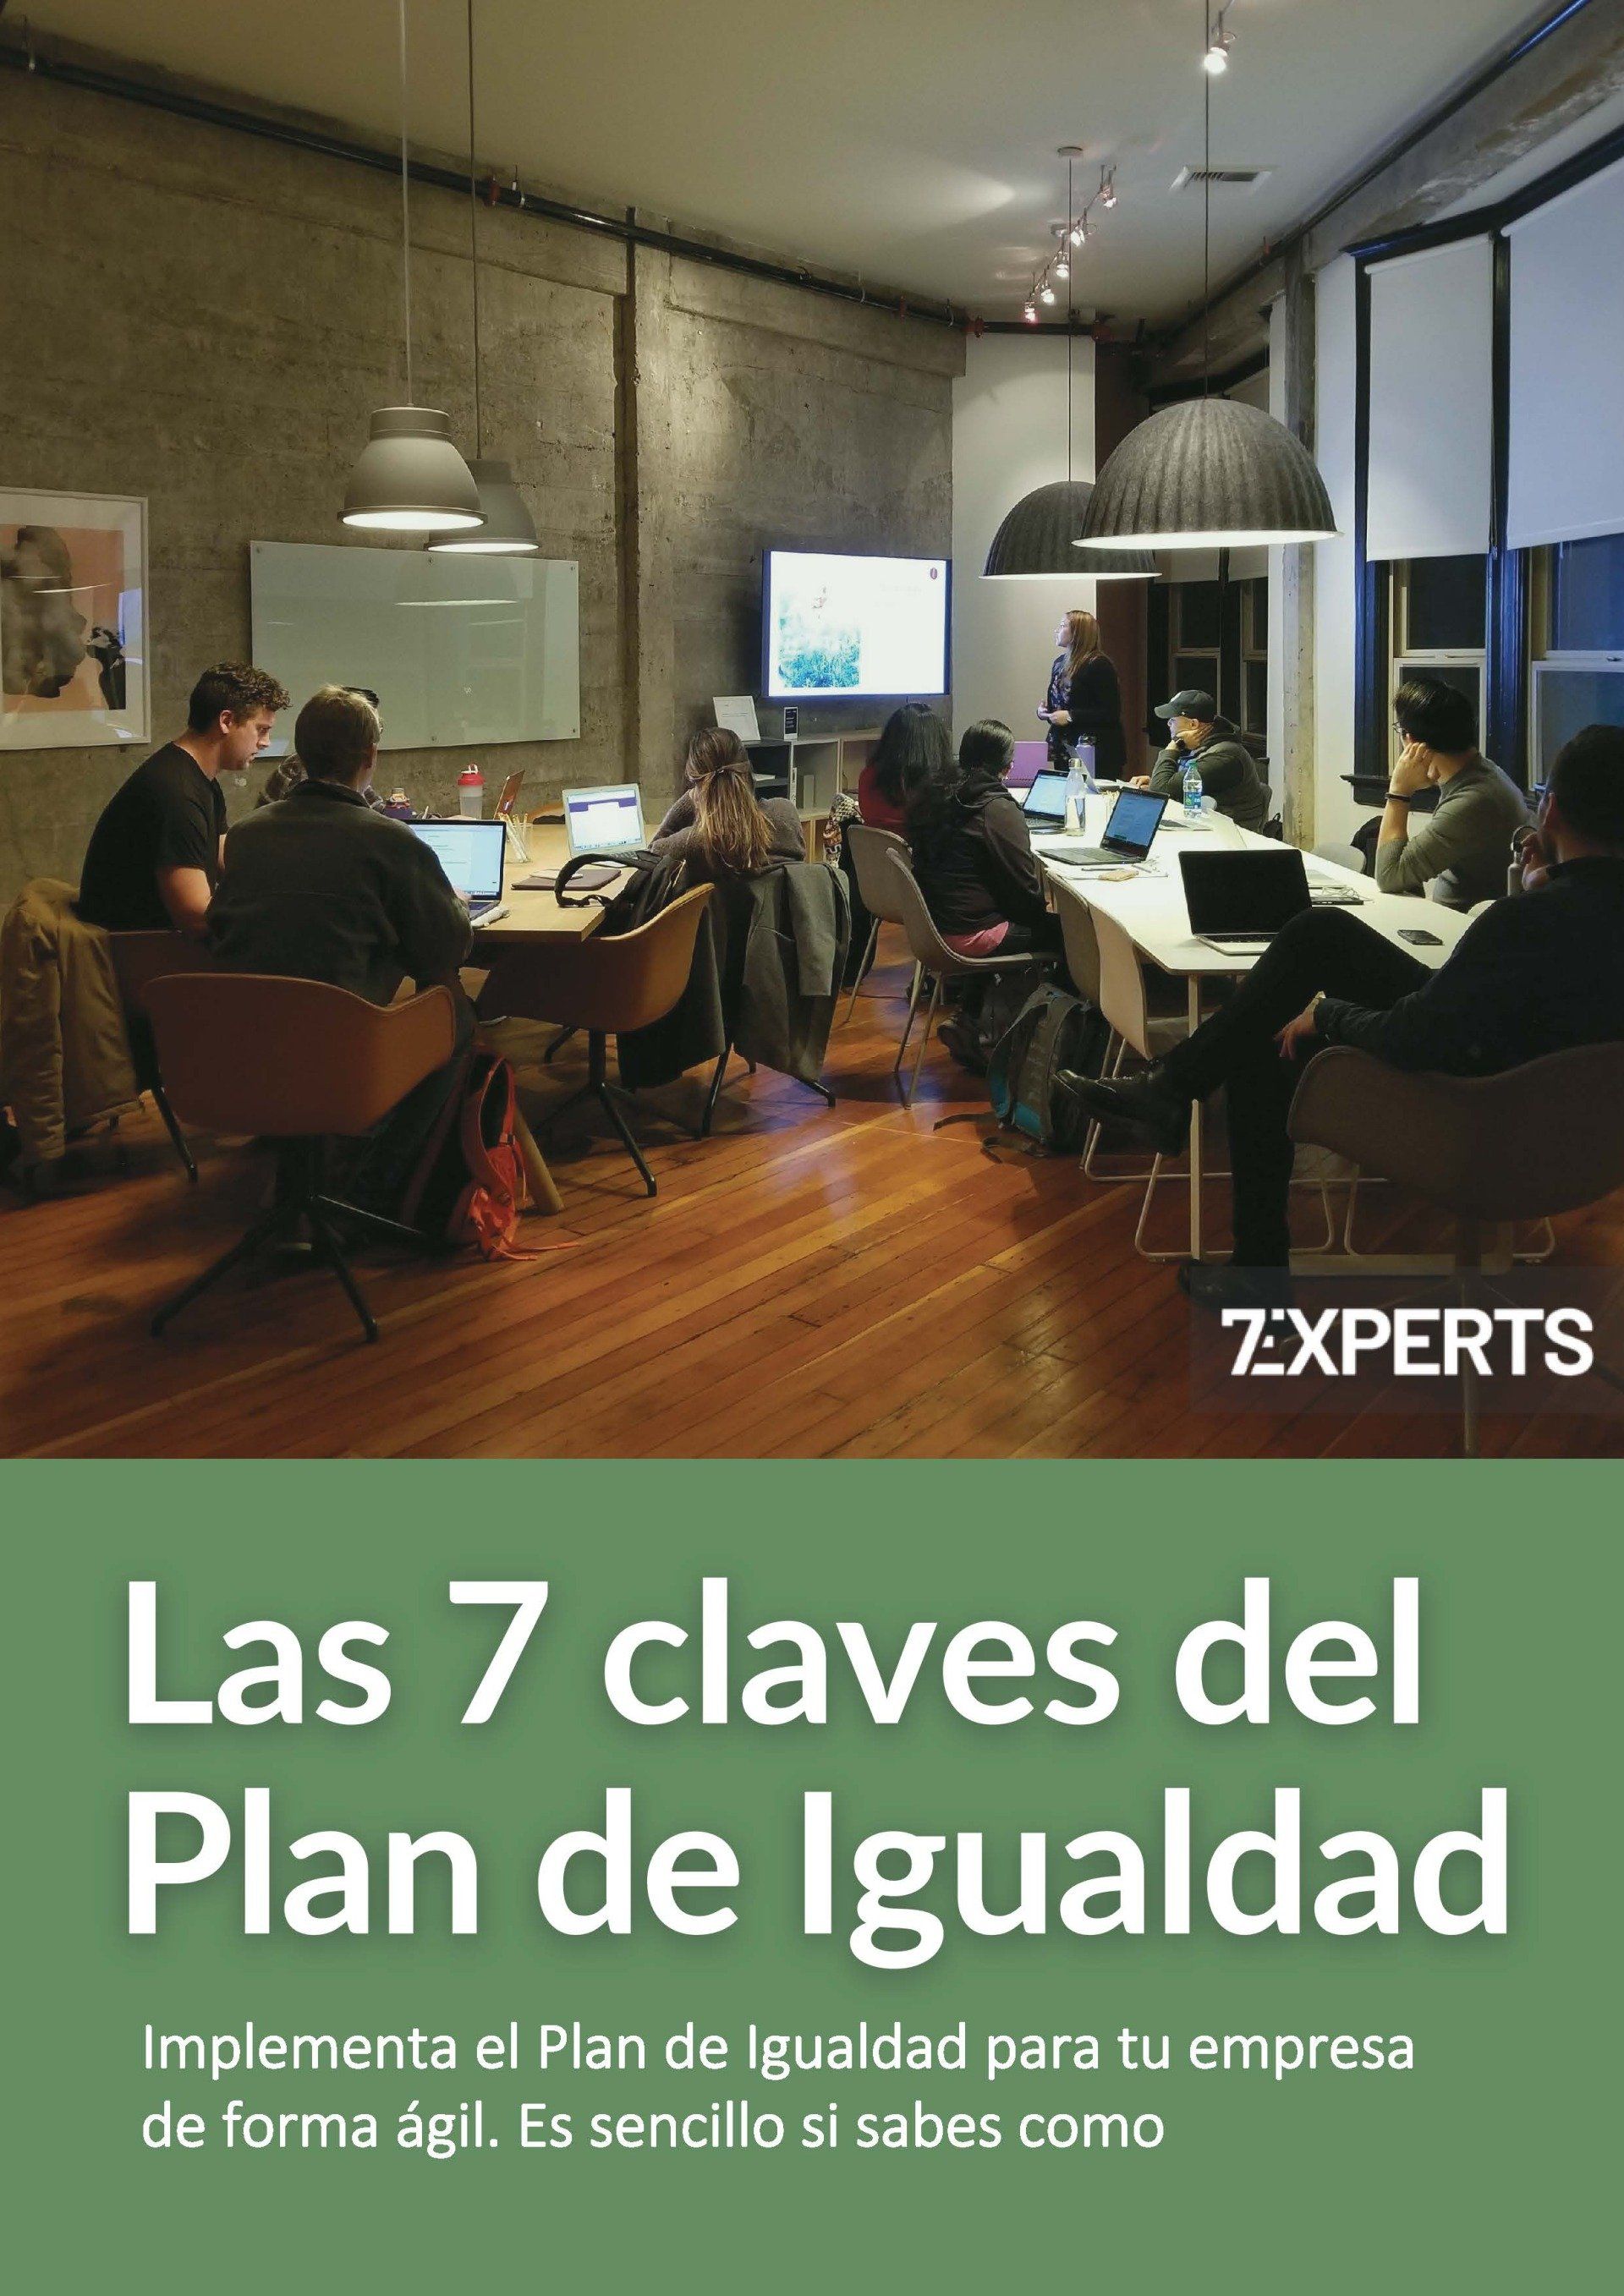 Plan de Igualdad 7Experts eBook